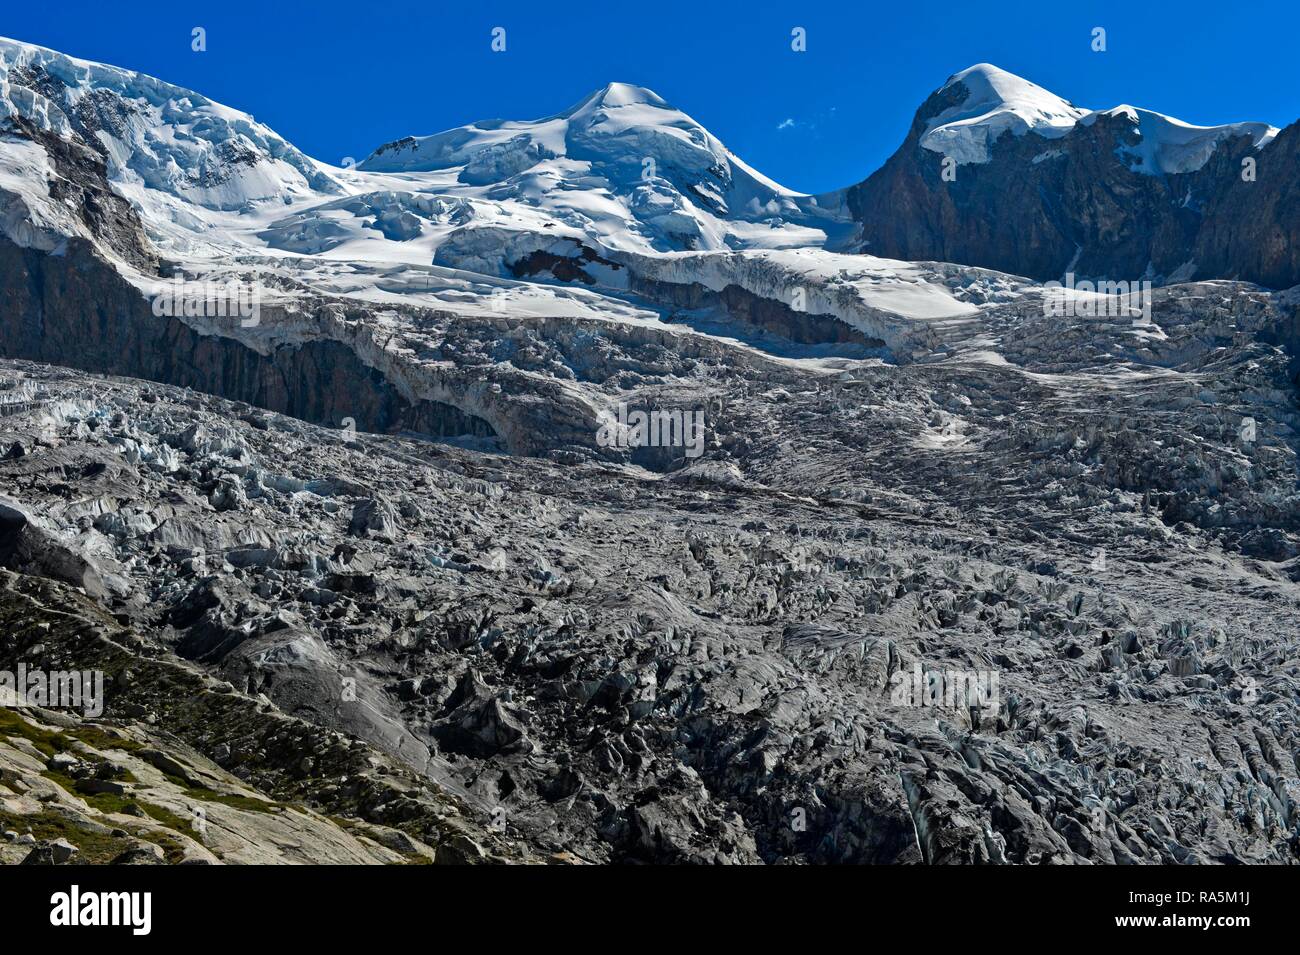 Los picos Castor y Pólux por encima de la frontera glaciar, Zermatt, Valais, Suiza Foto de stock